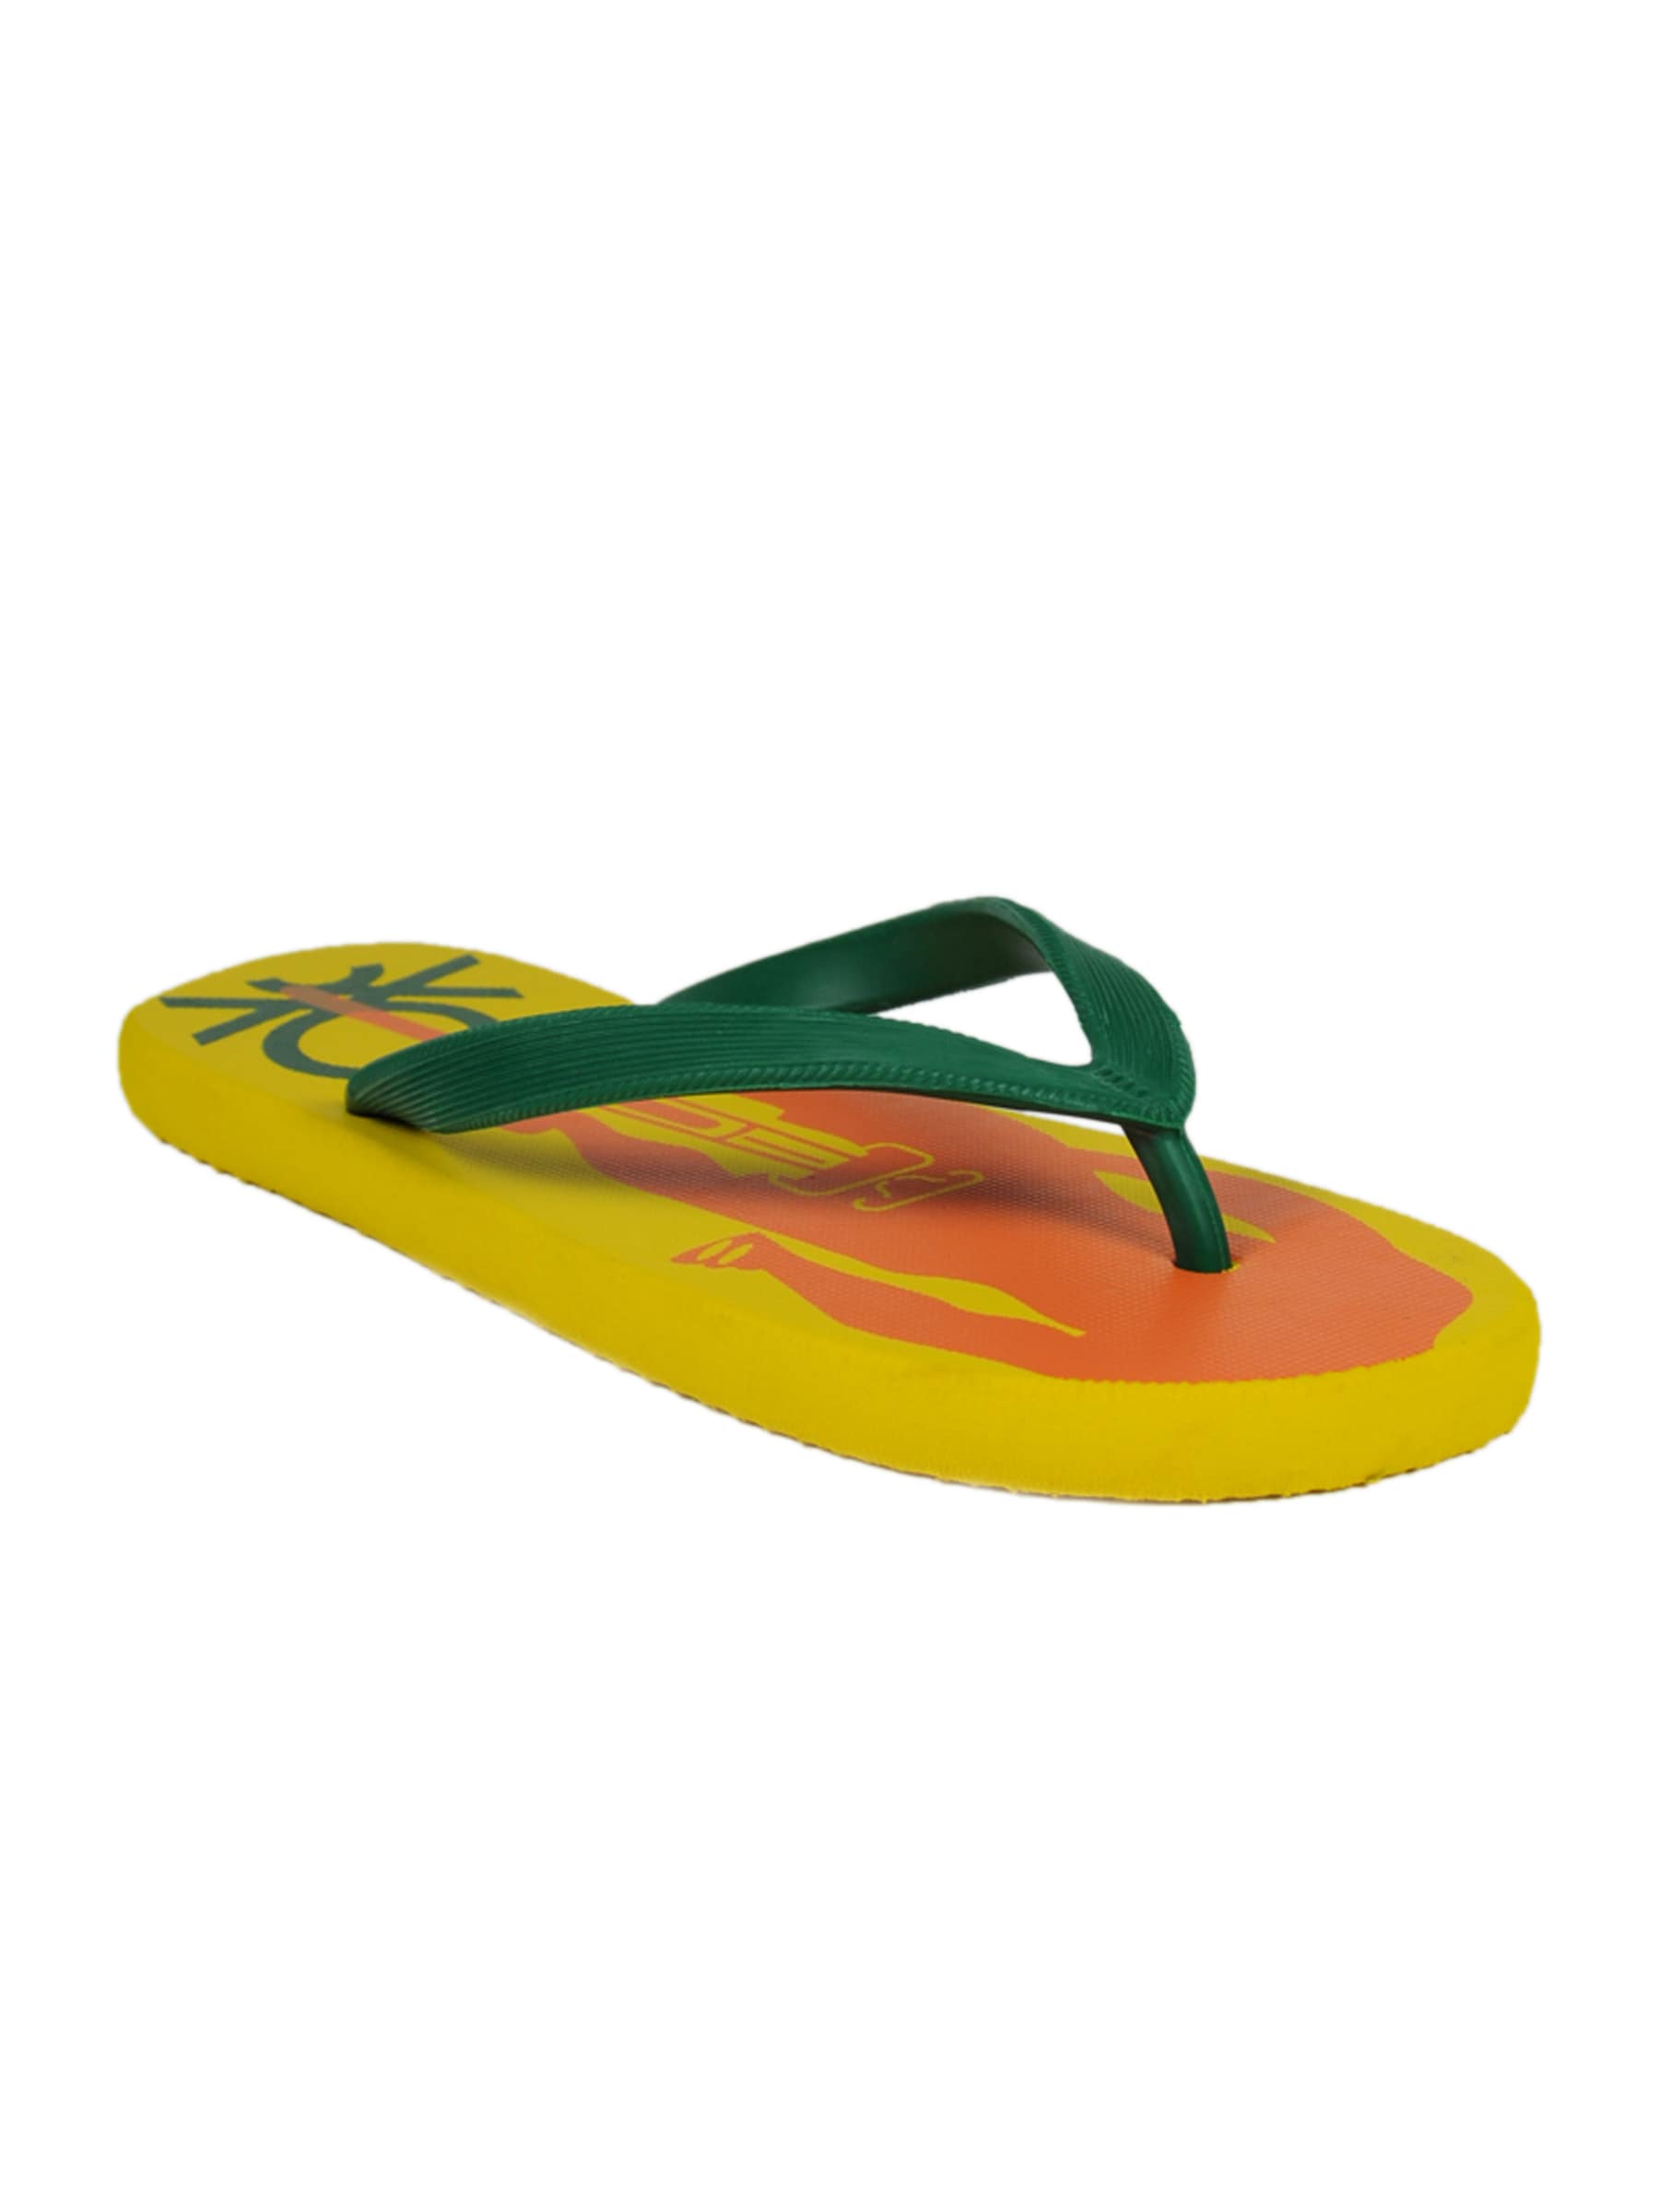 United Colors of Benetton Men Speeder Yellow Flip Flops